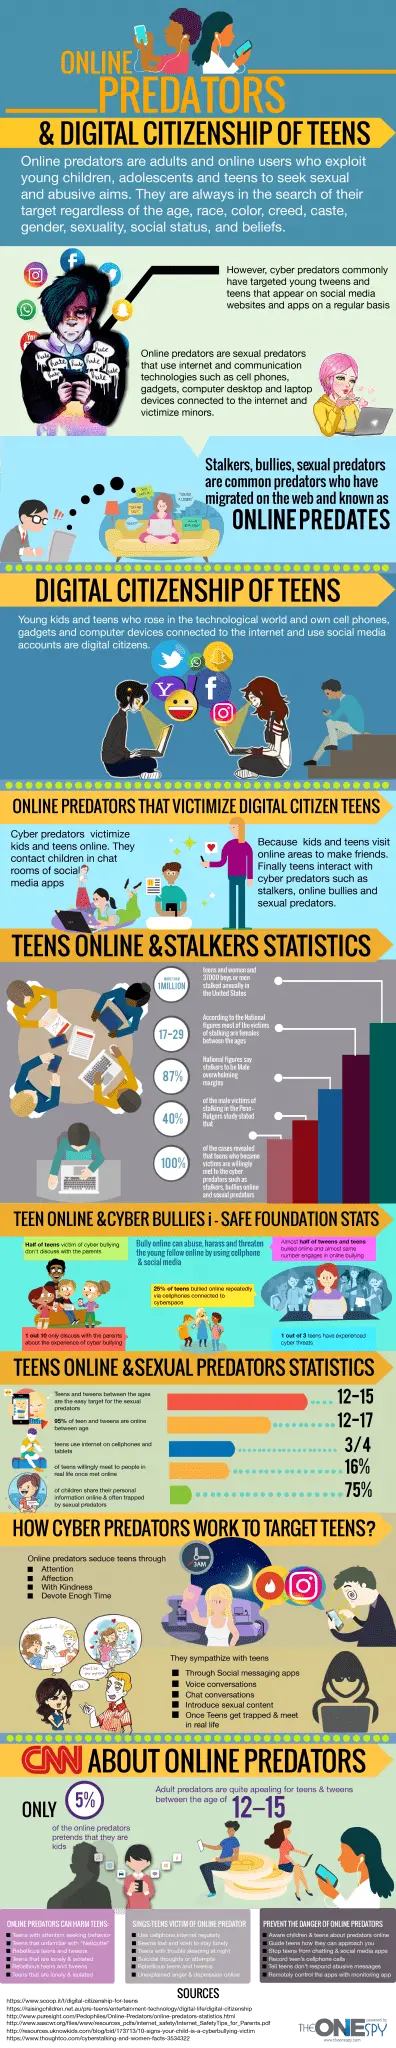 cittadinanza digitale di adolescenti e cyber predatori infografica